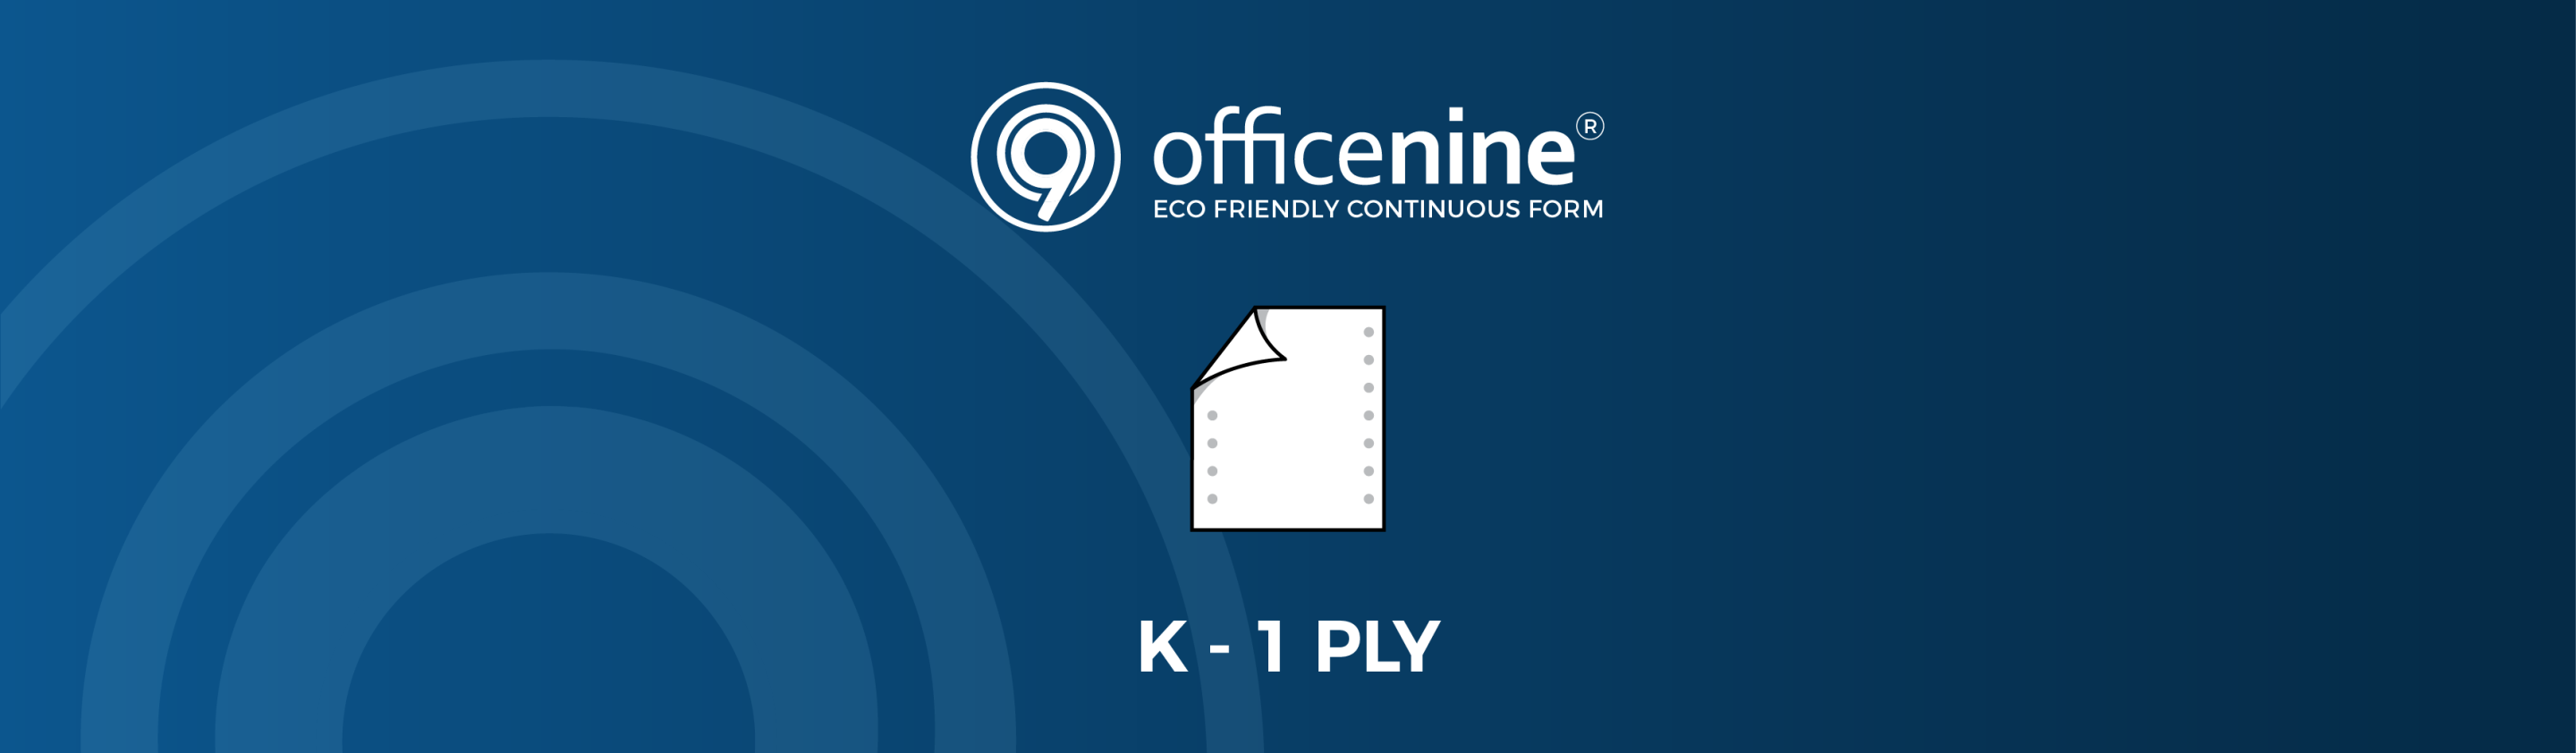 K-1-PLY Officenine